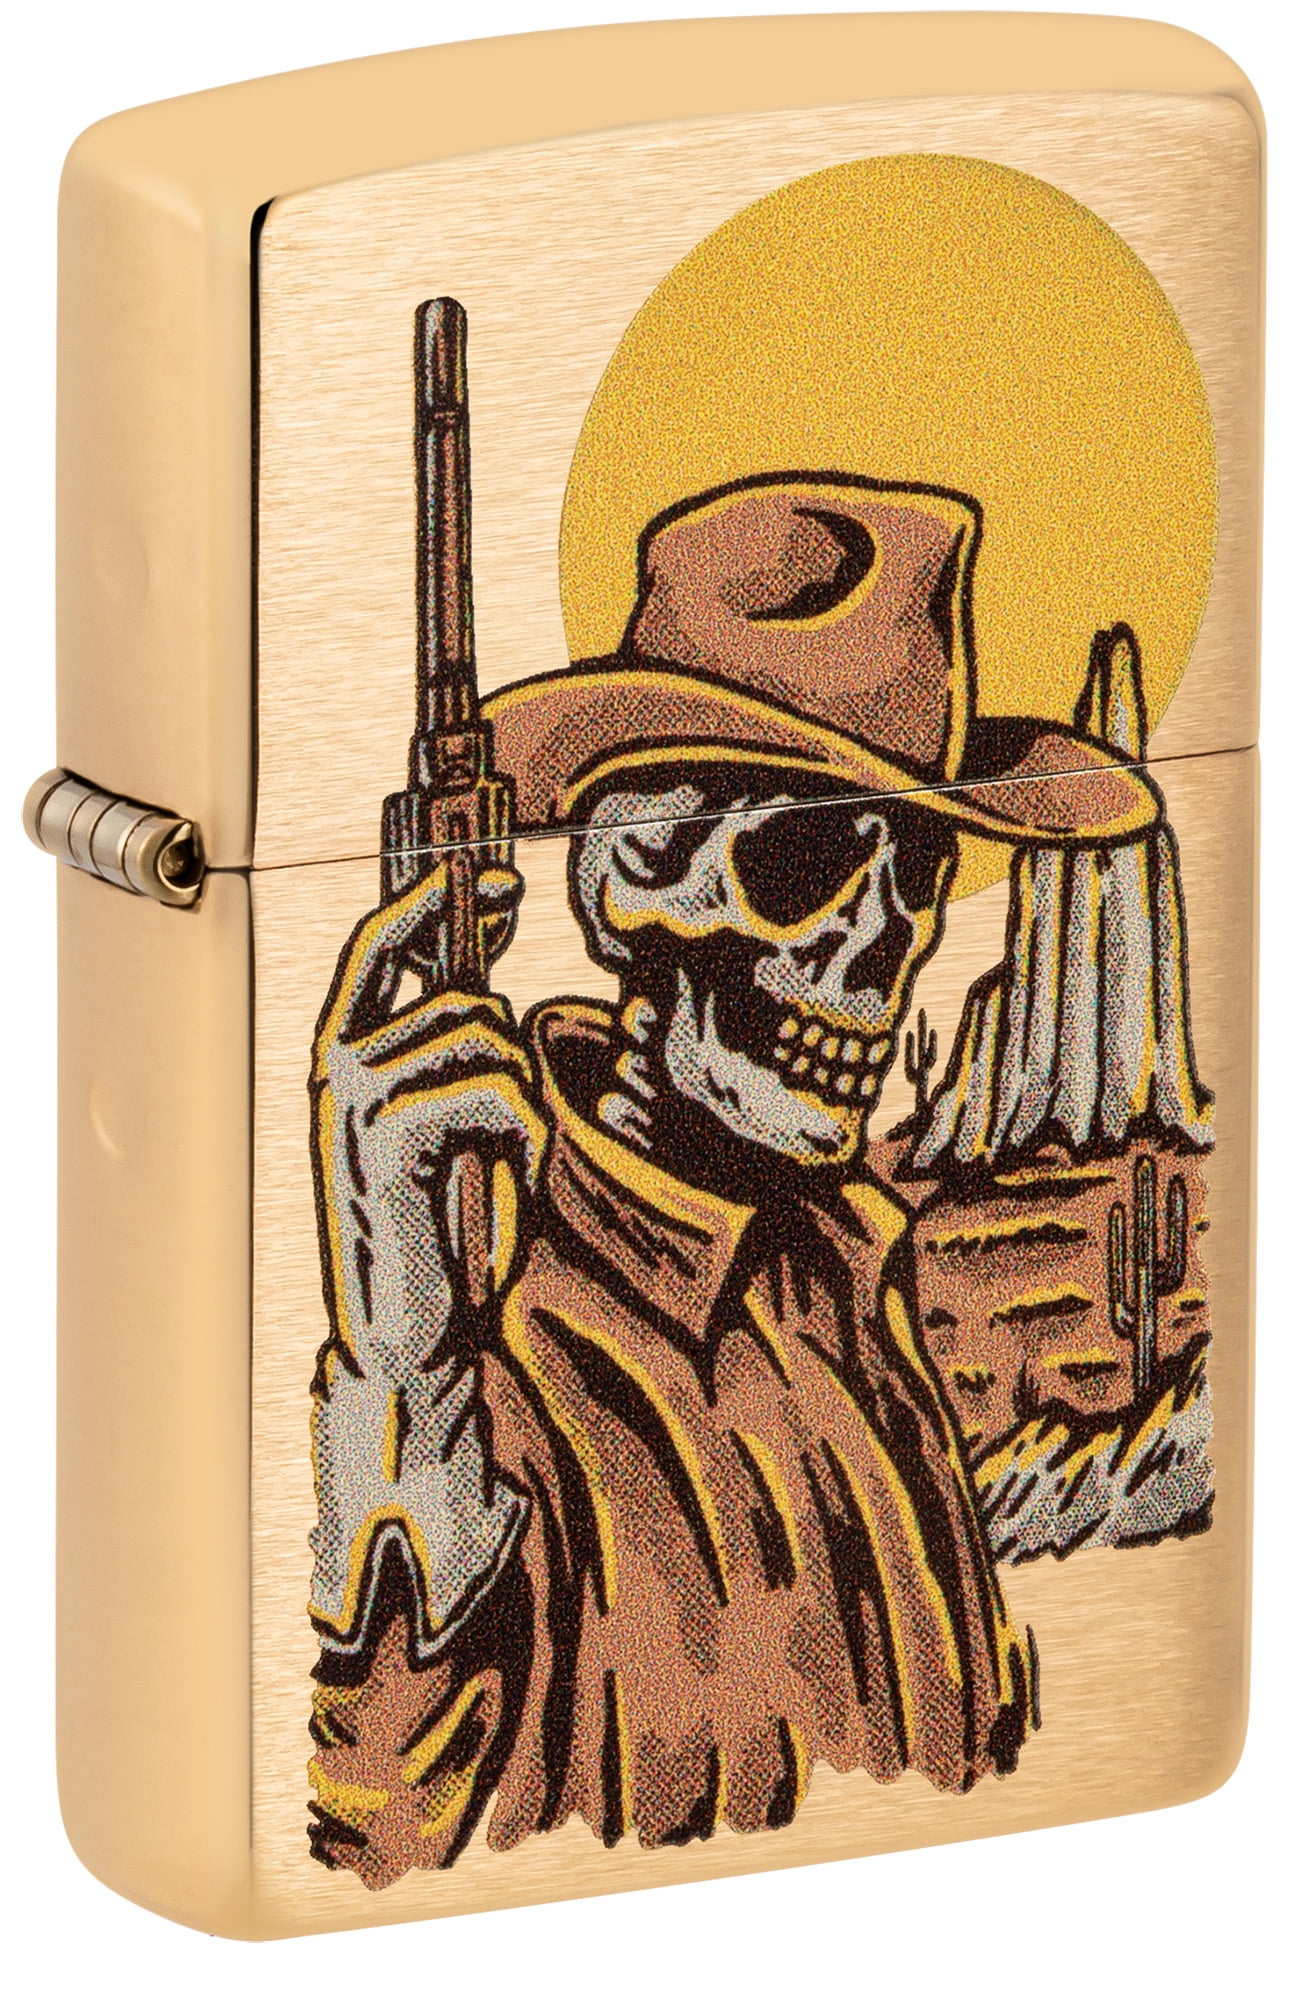 Zippo Wild West Skeleton Design Brushed Brass Pocket Lighter